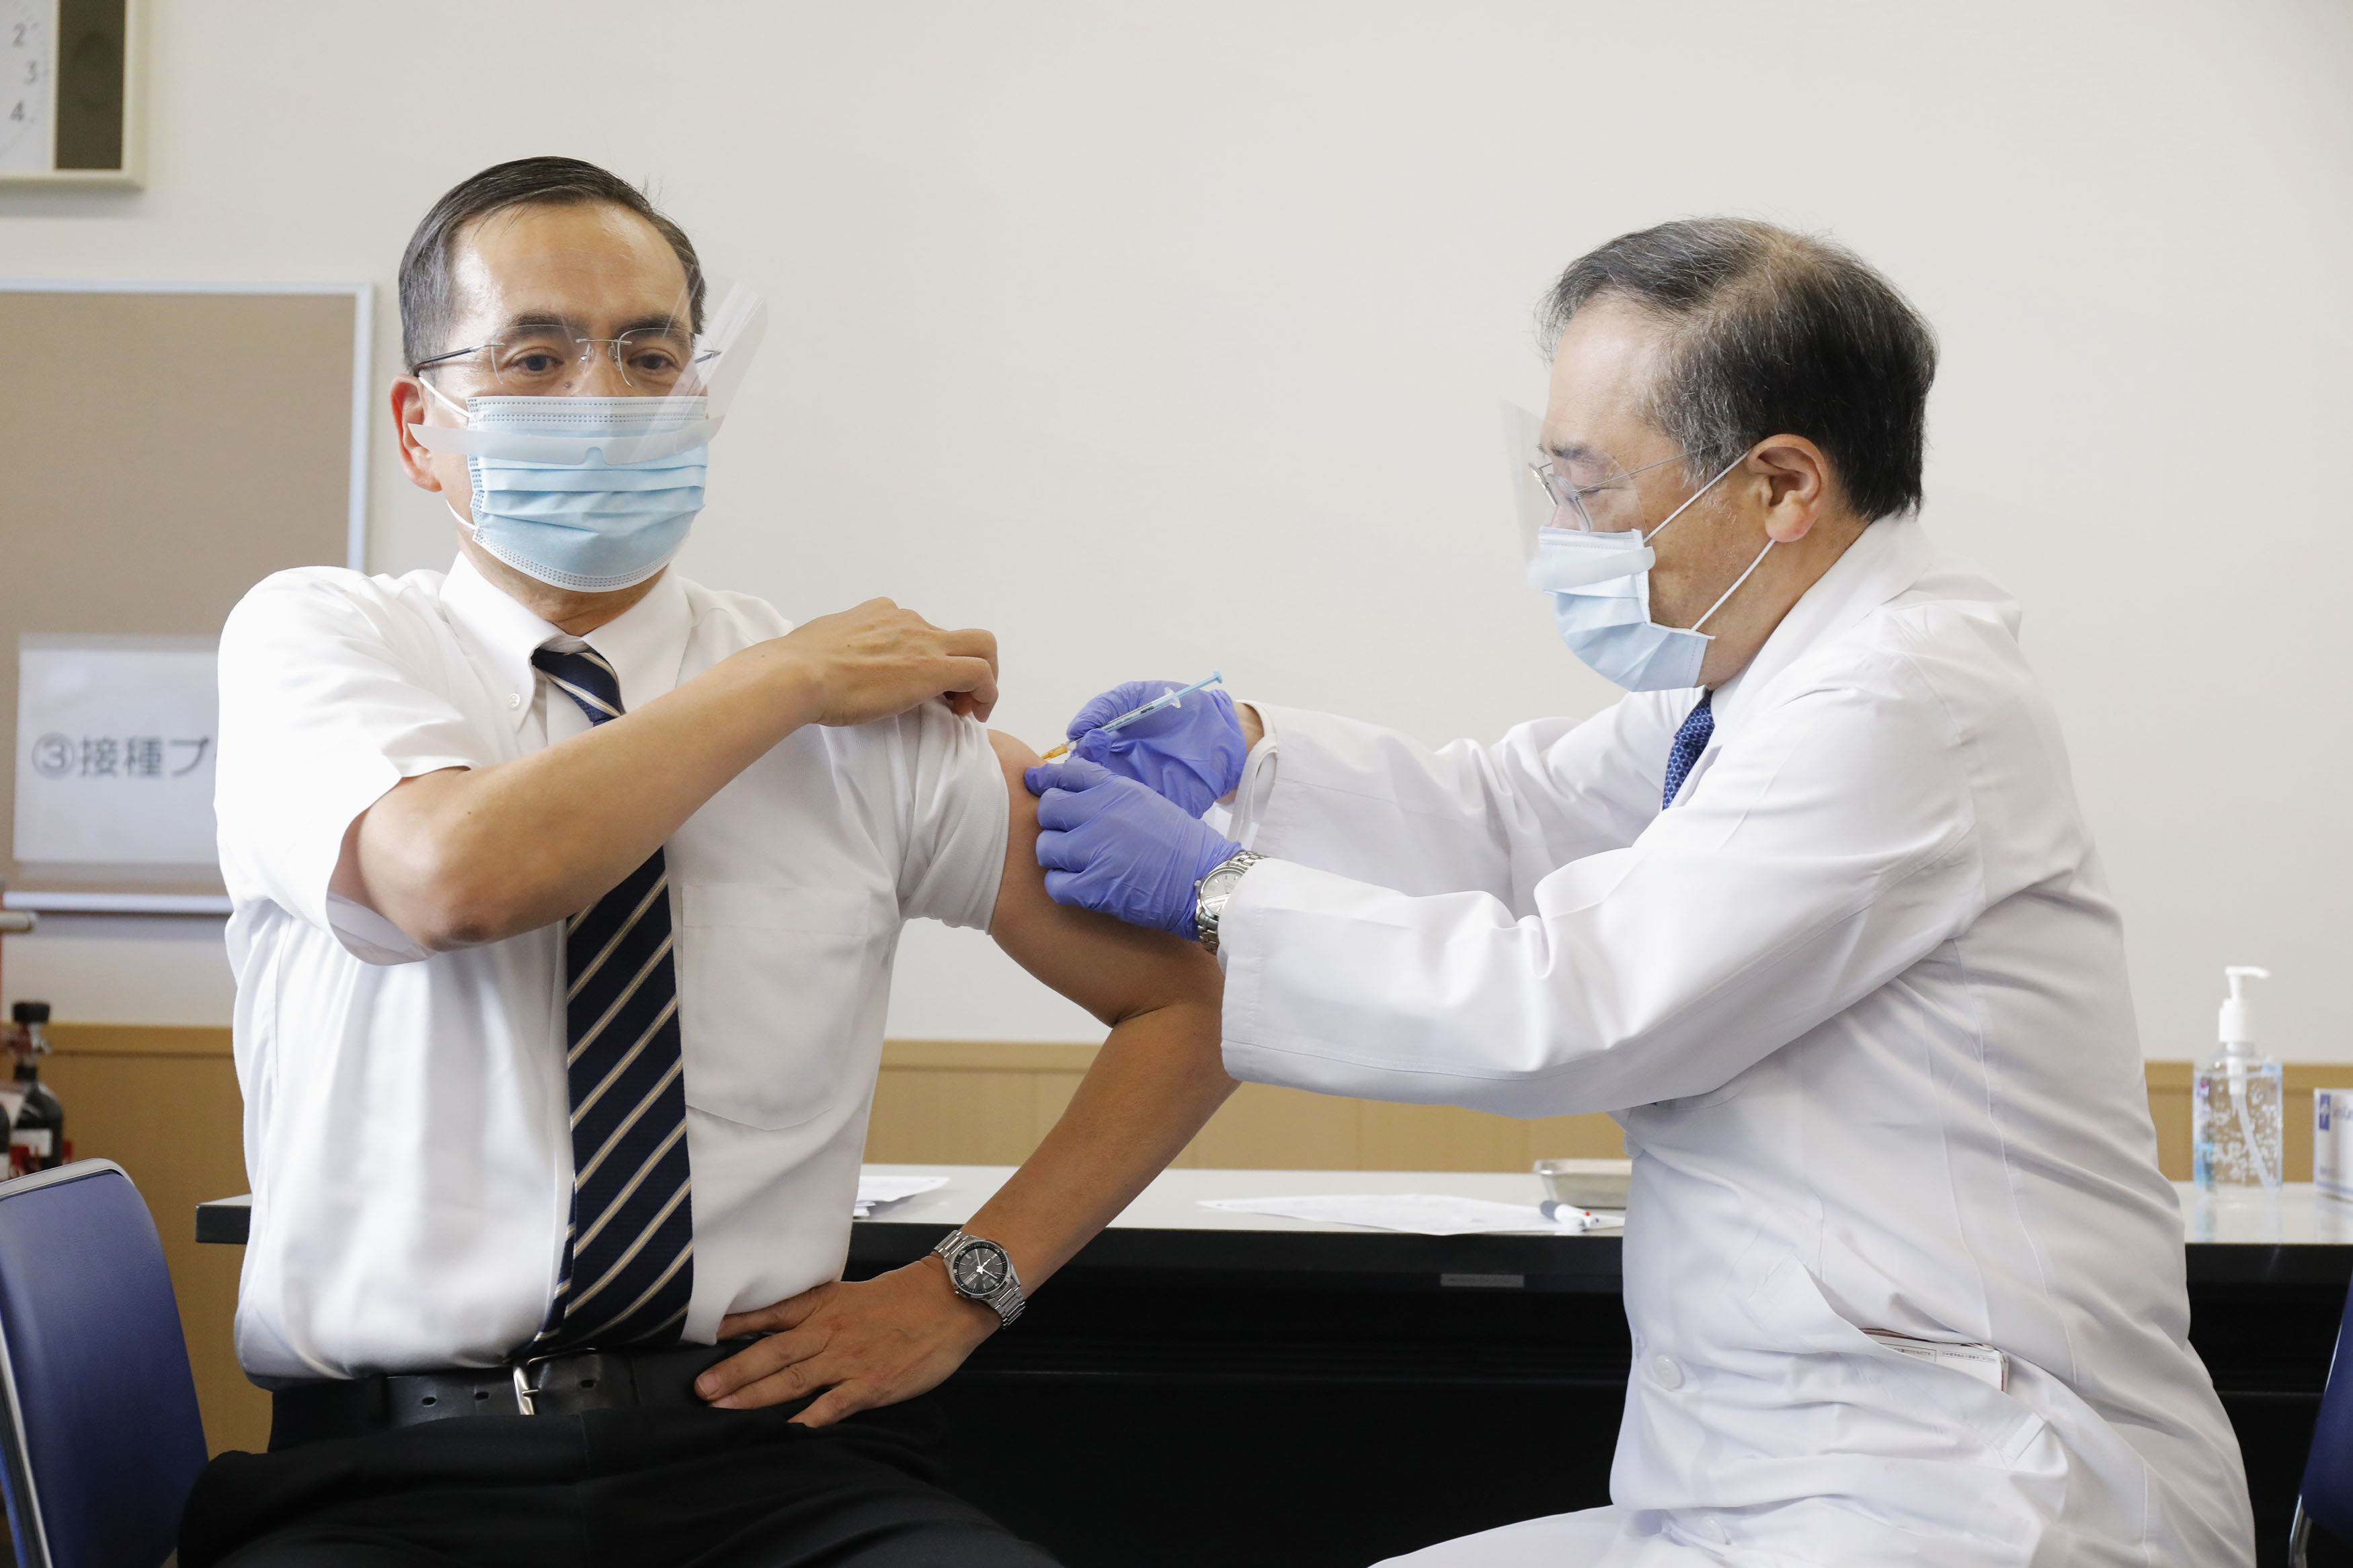 2021년 2월 17일 일본 내 코로나19 백신 첫 접종 대상자로 선정된 도쿄의료센터의 아라키 가즈히로(新木 一弘) 원장(왼쪽)이 백신 주사를 맞고 있다. (도쿄 교도=연합뉴스)